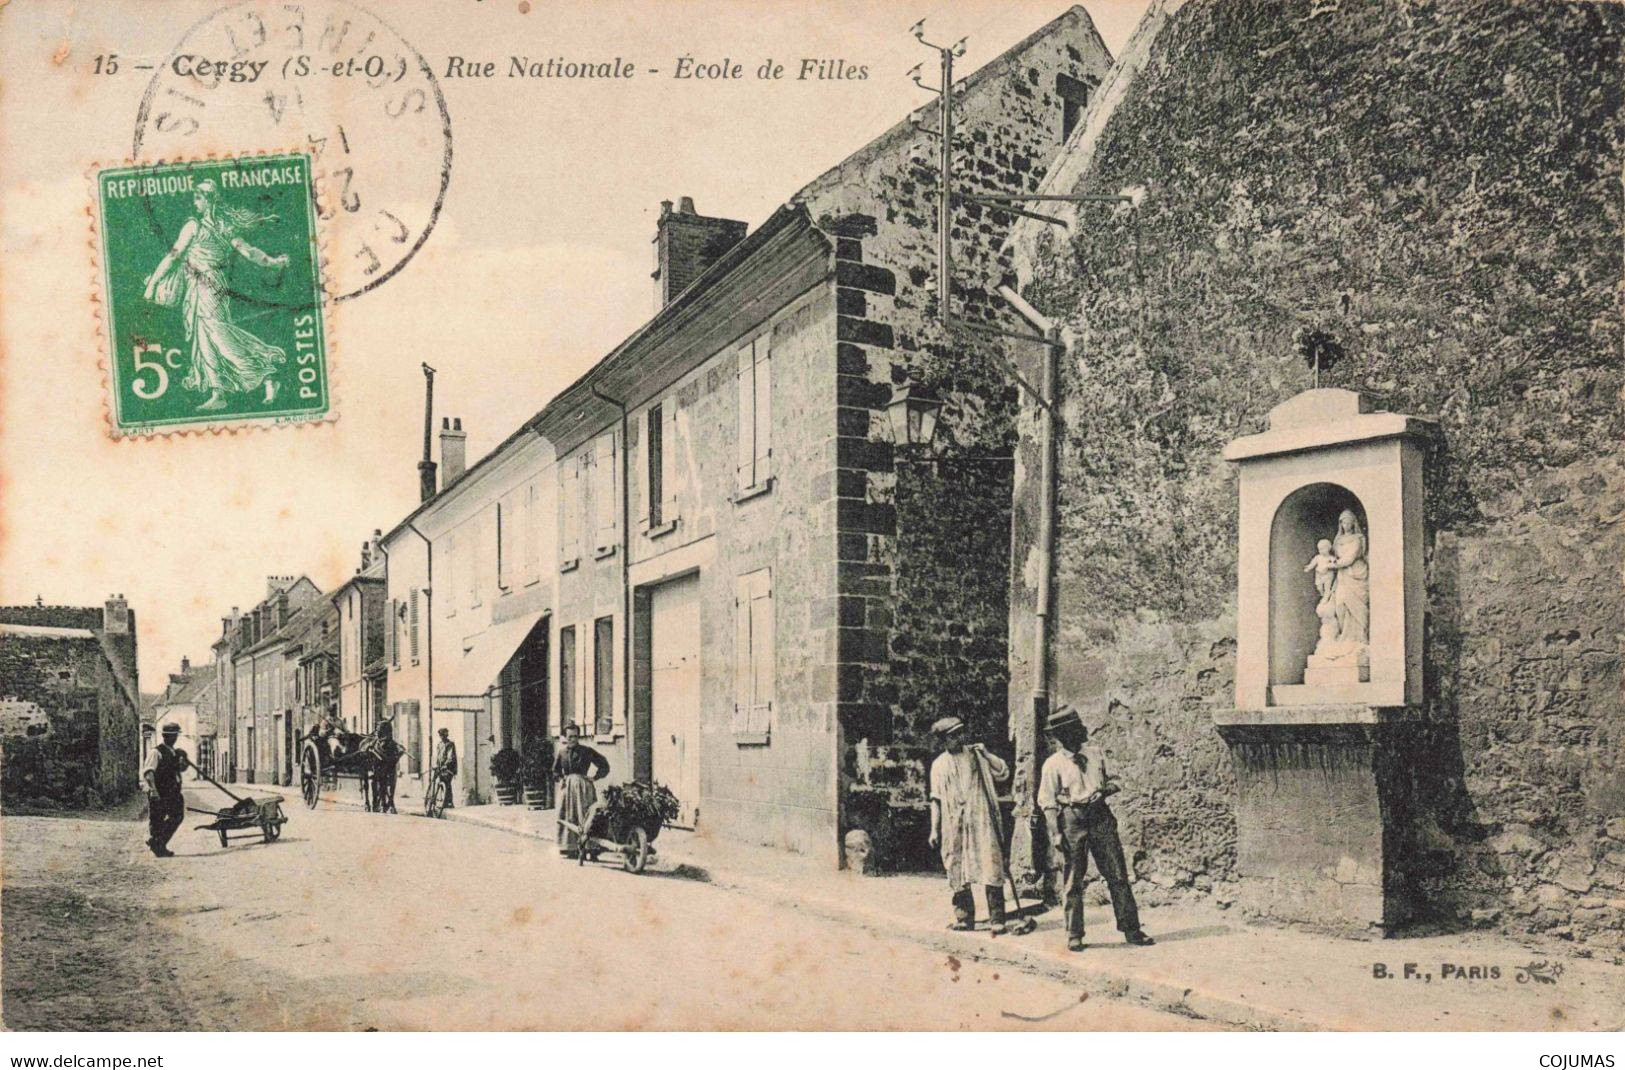 95 - CERGY - S01298 - Rue Nationale - Ecole De Filles - Brouette - Attelage - En L'état - Déchirée - L1 - Cergy Pontoise